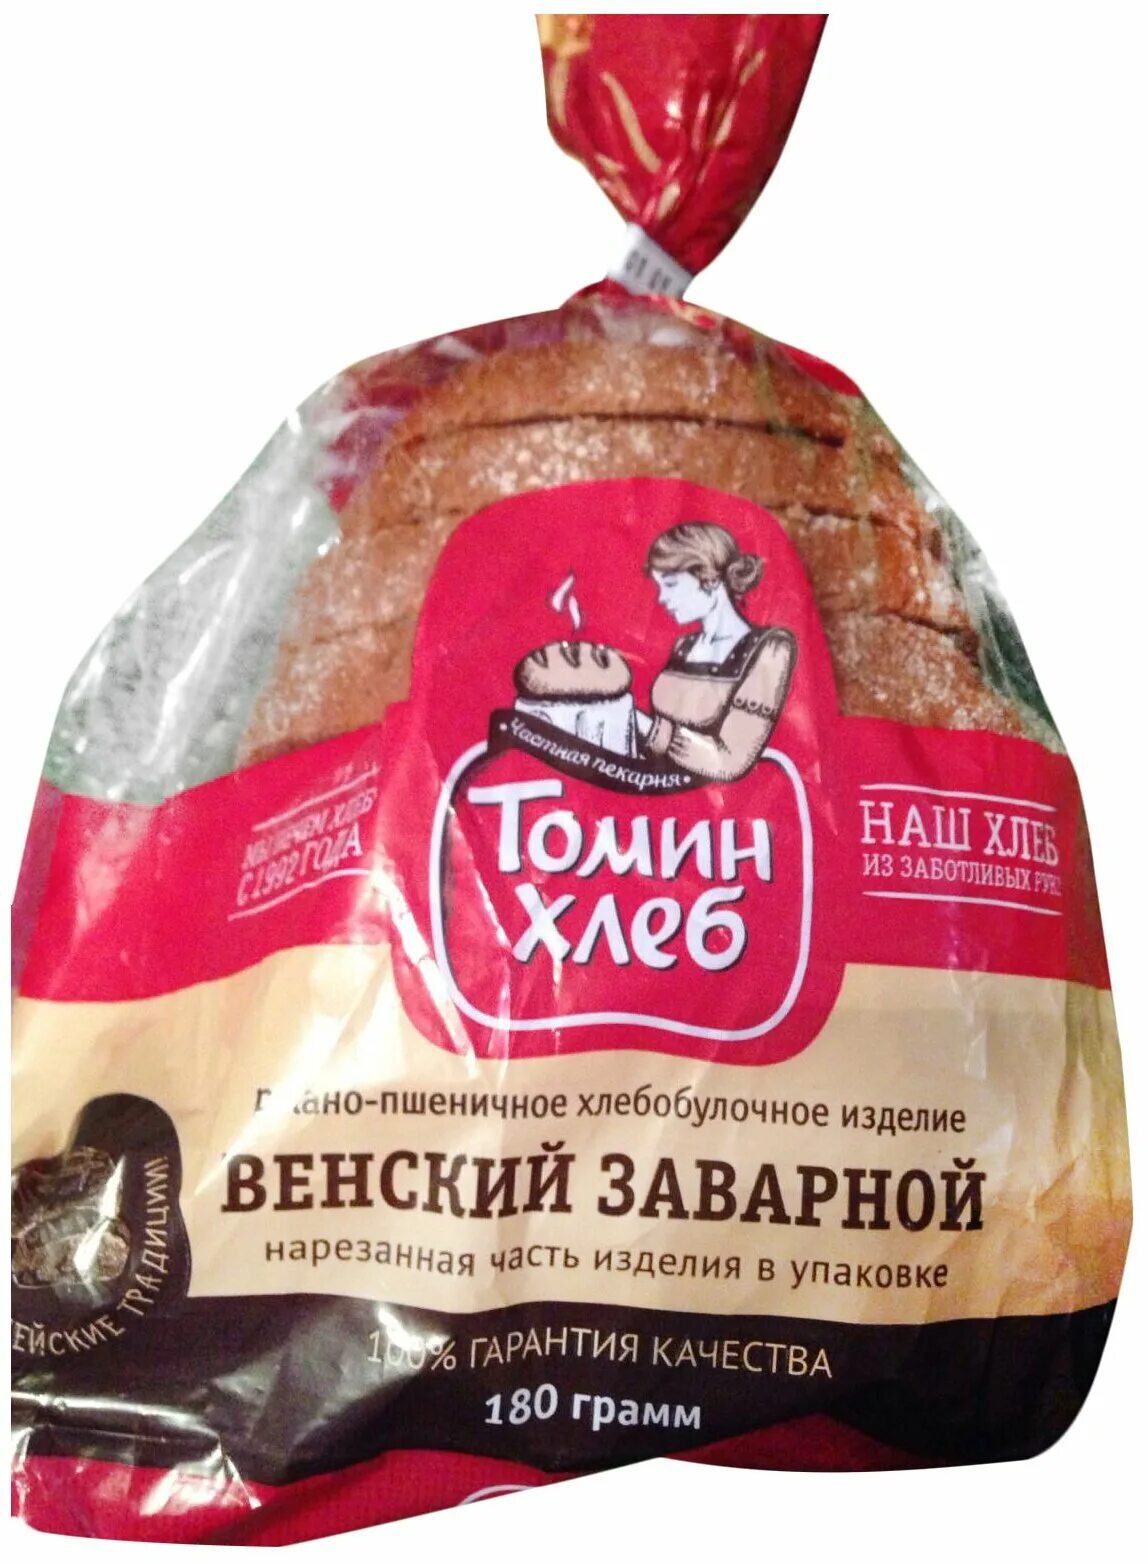 Пшеничный заварной. Венский заварной хлеб. Томин хлеб. Томин хлеб хлеб. Венский хлеб Томин.